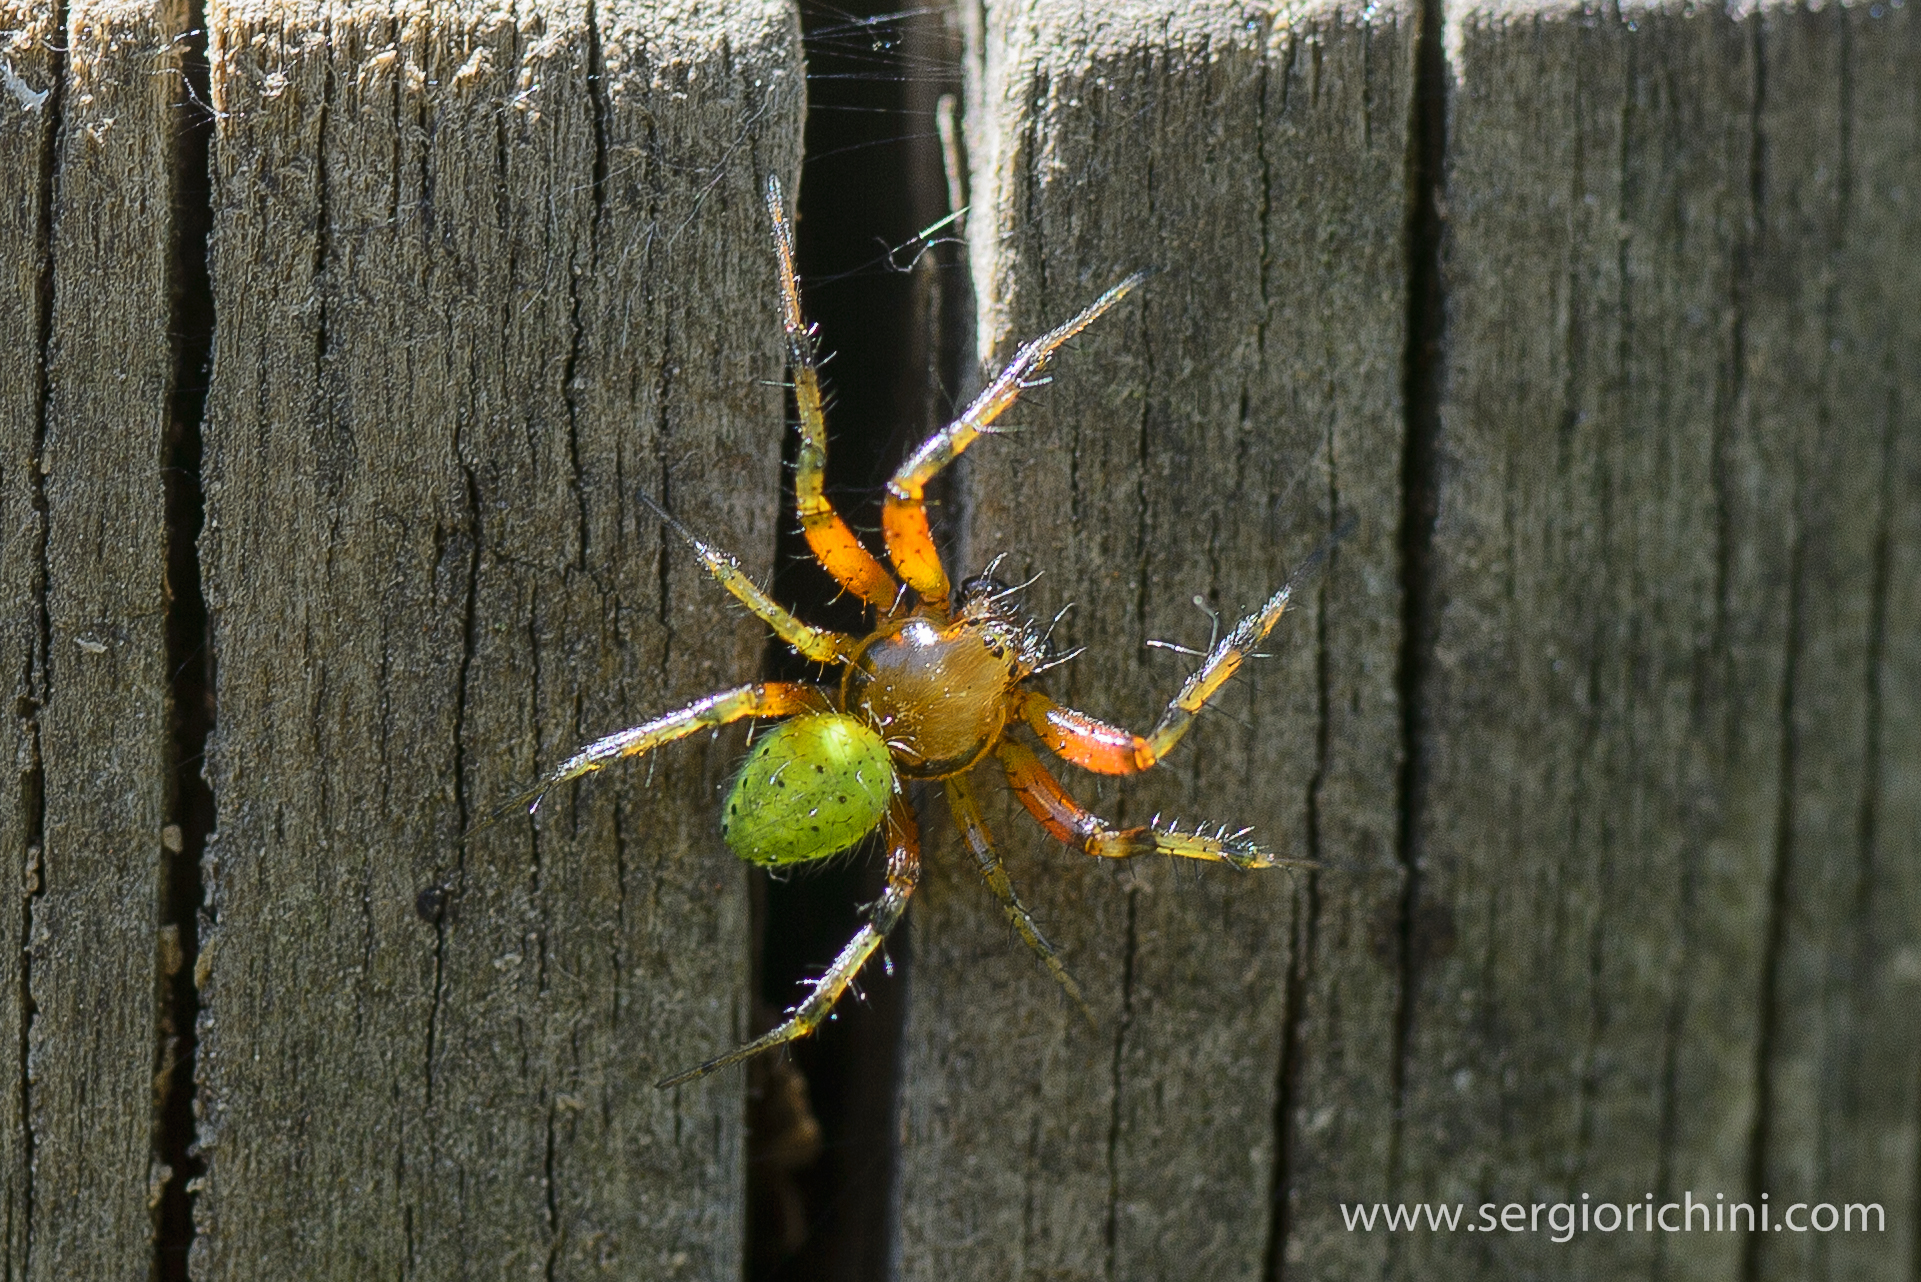 Spider of the genus Araneus...